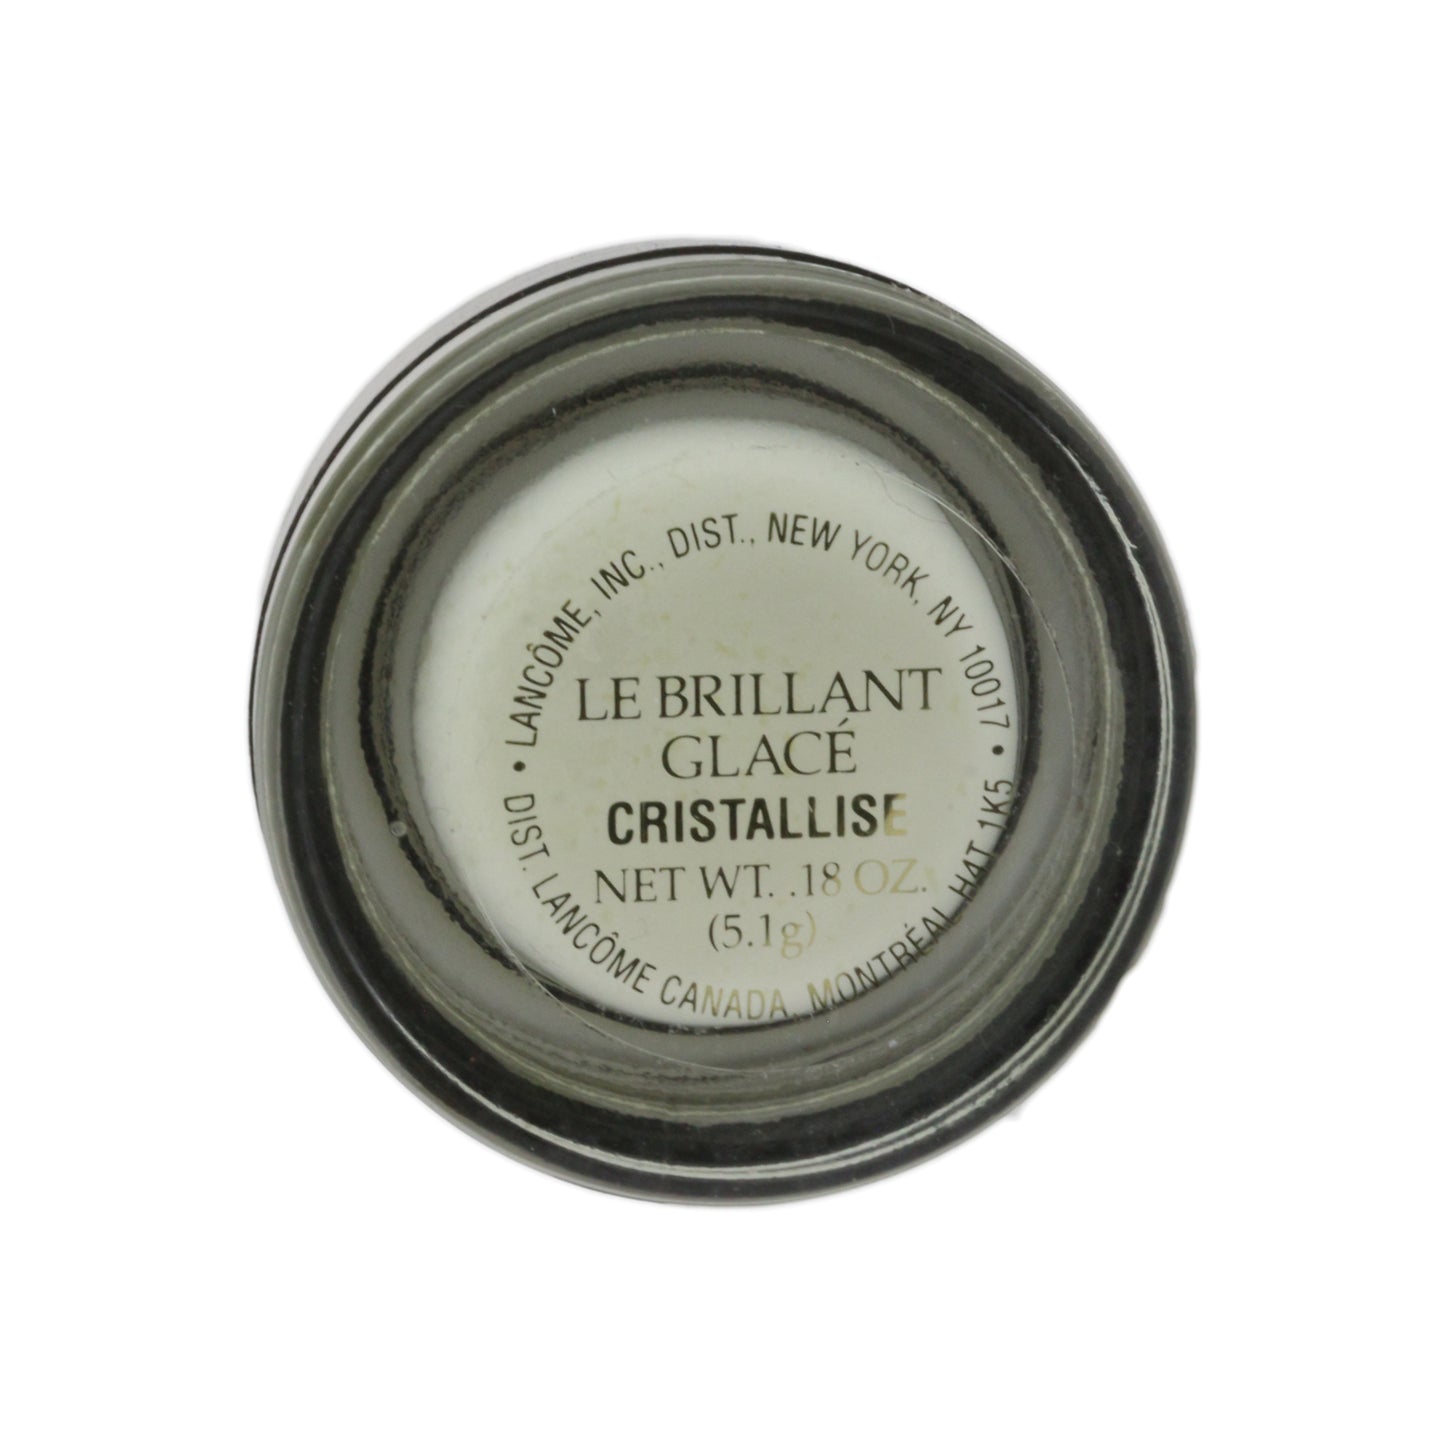 Lancome Le Brillant Glace 'Cristallise' 0.18oz/5.1g